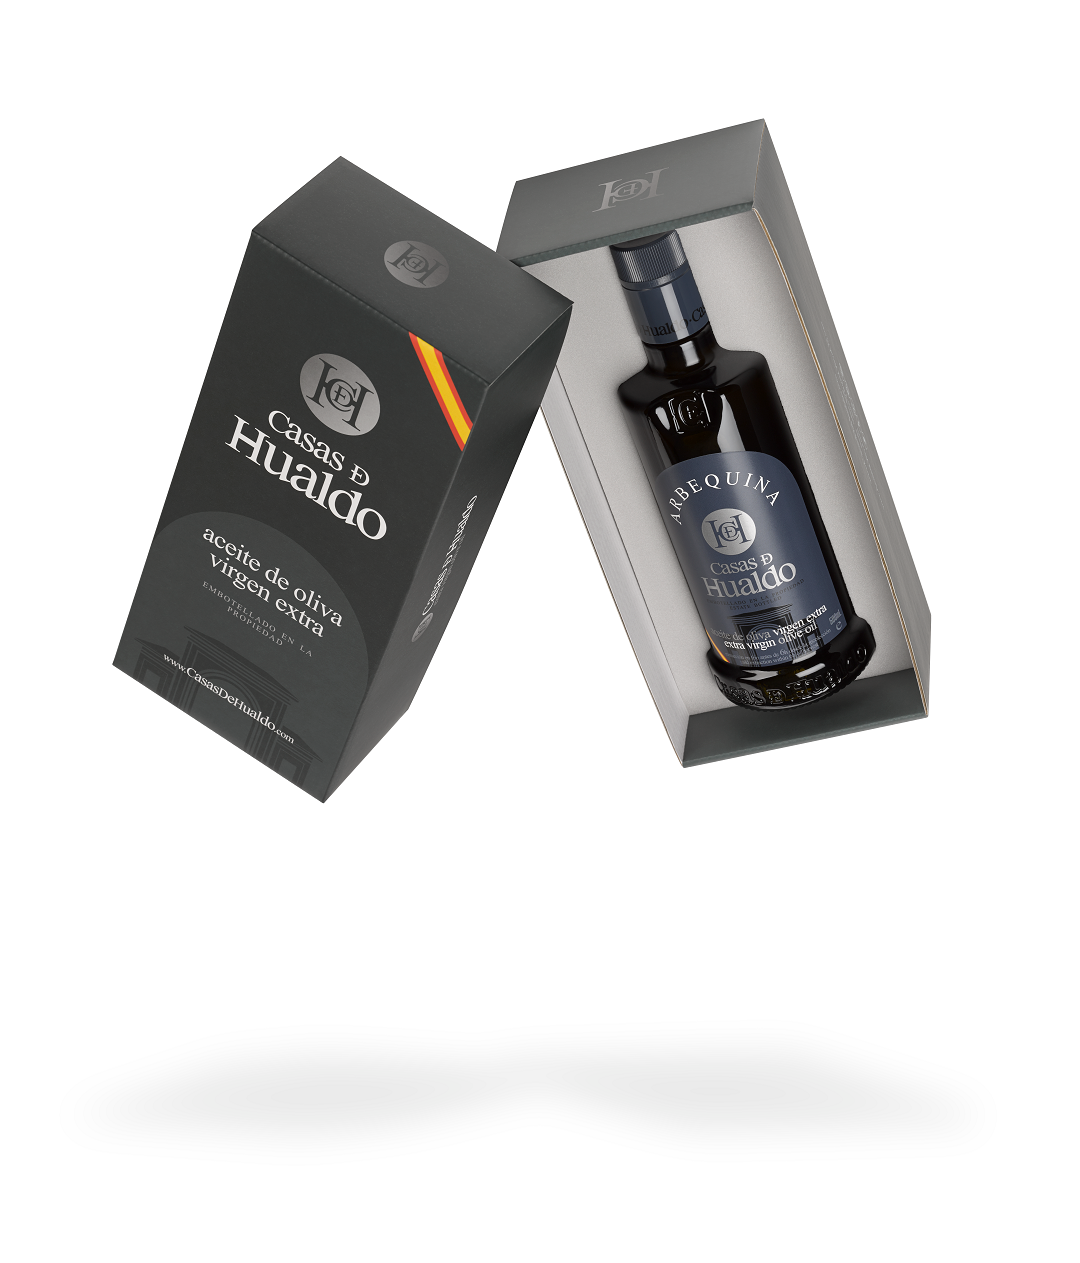 Подаръчен комплект, 1 бутилка, ARBEQUINA, от CASAS DE HUALDO, 500мл от EVOO.bg